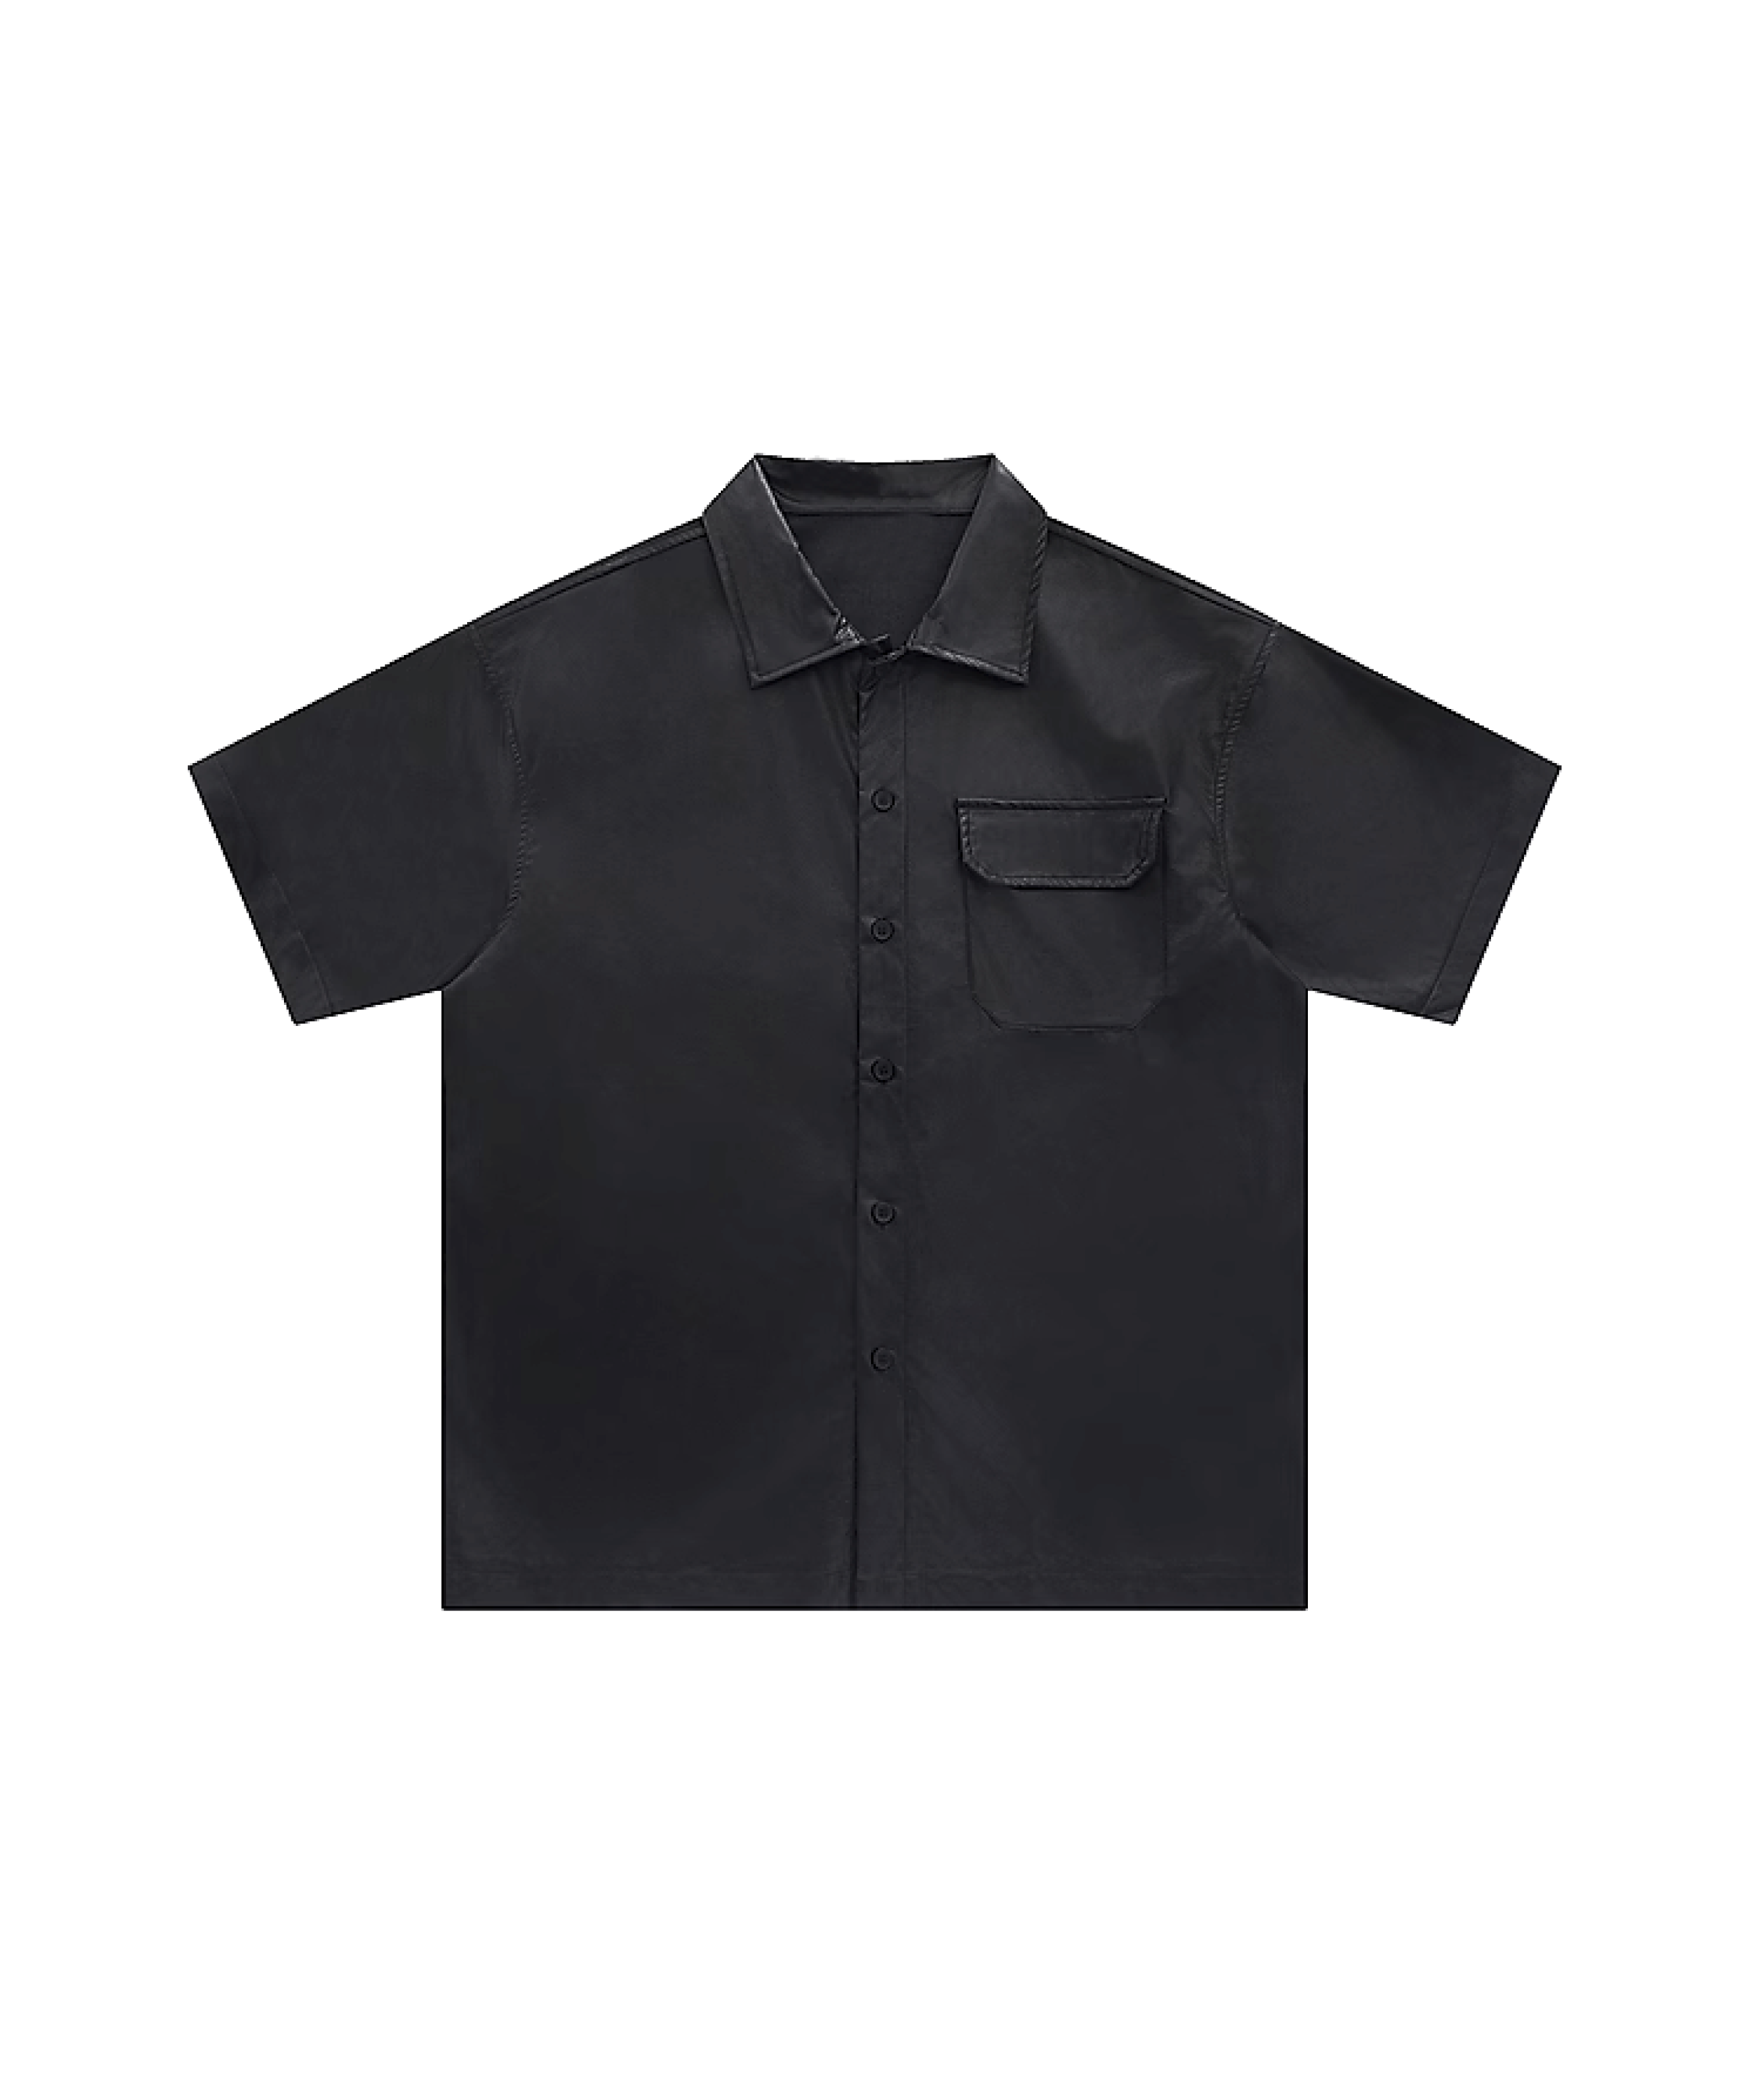 Basic Eco Leather Pocket Shirt